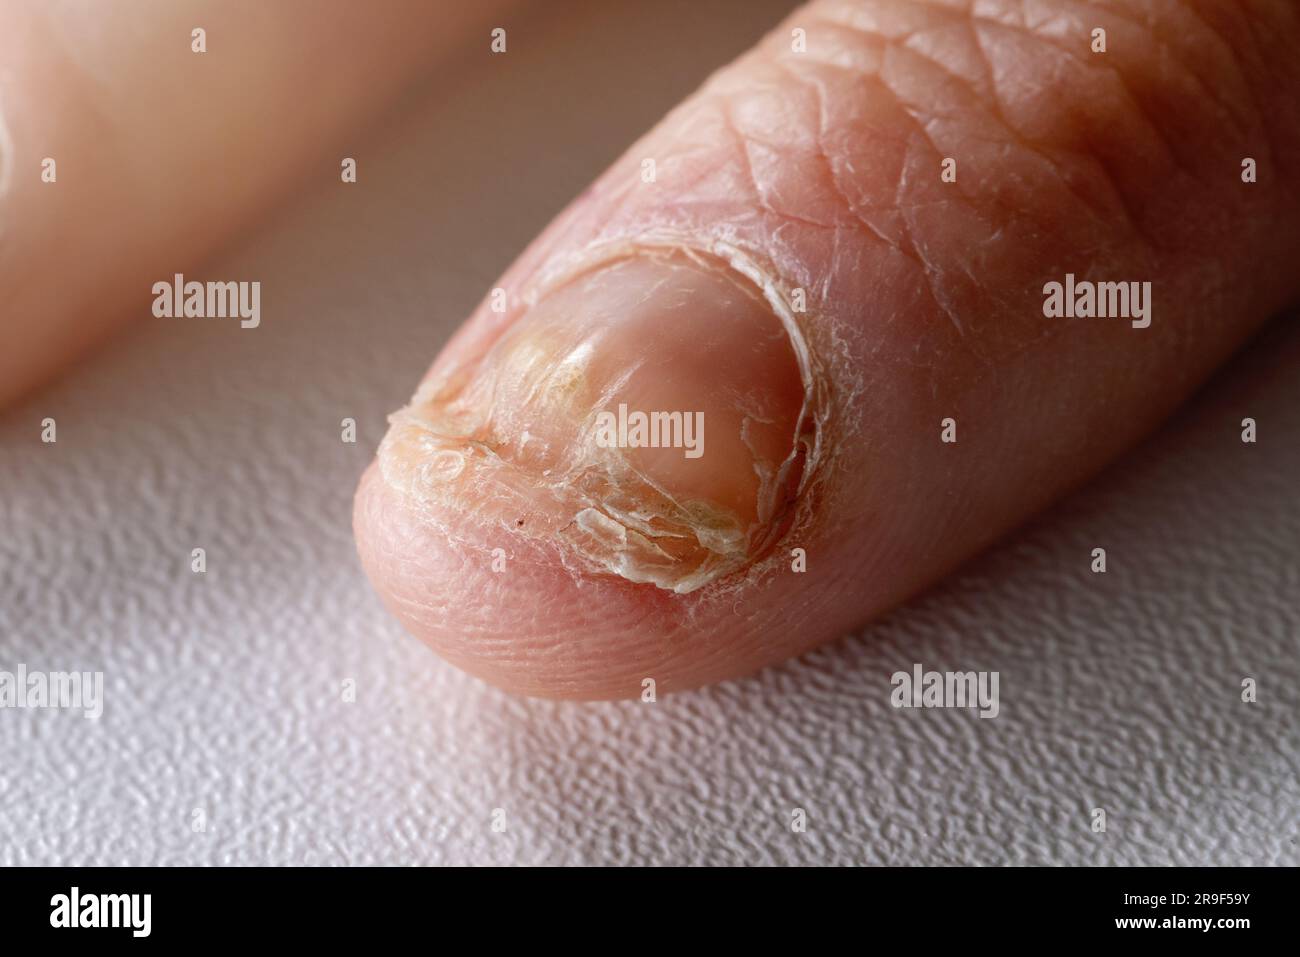 infezione fungina. fungo candida unghia su unghia a mano Foto Stock